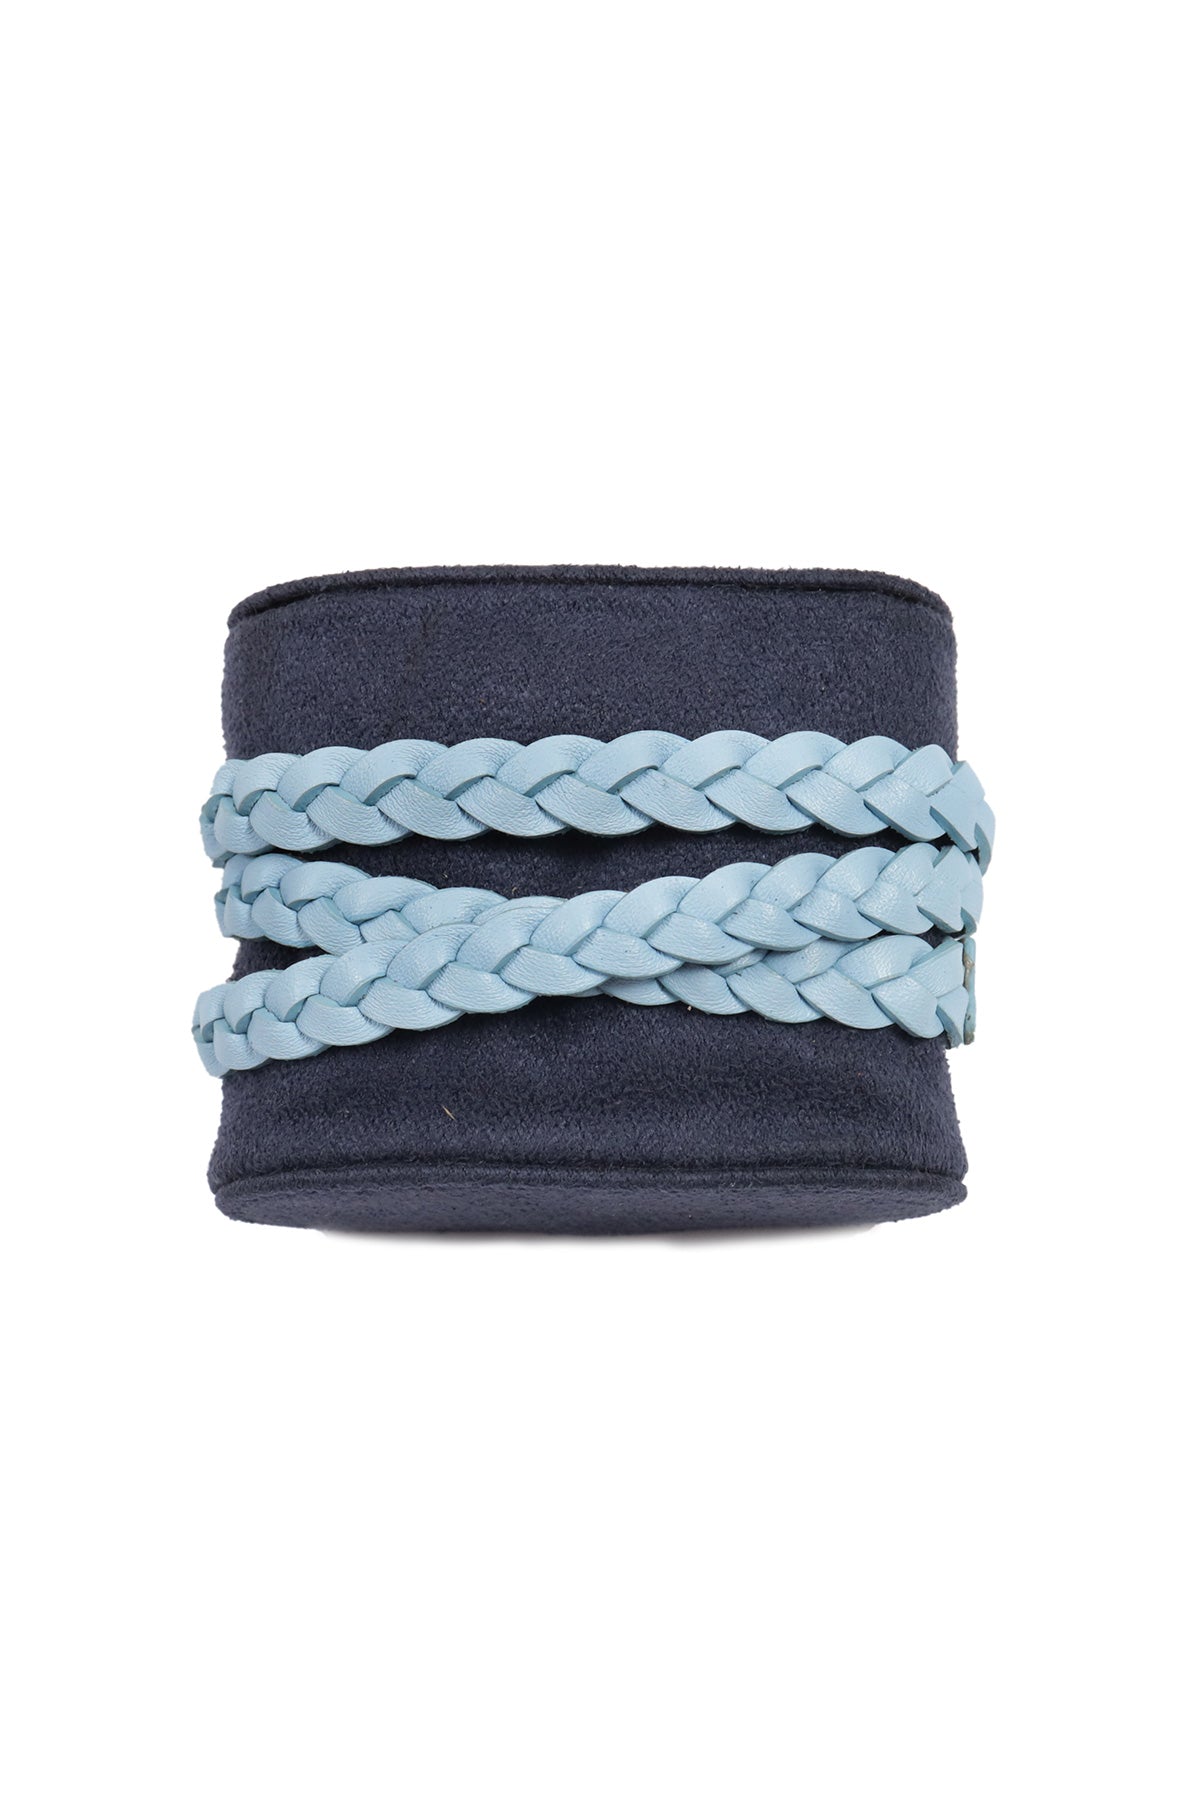 Triple Wrap Sky Blue Womens Bracelet